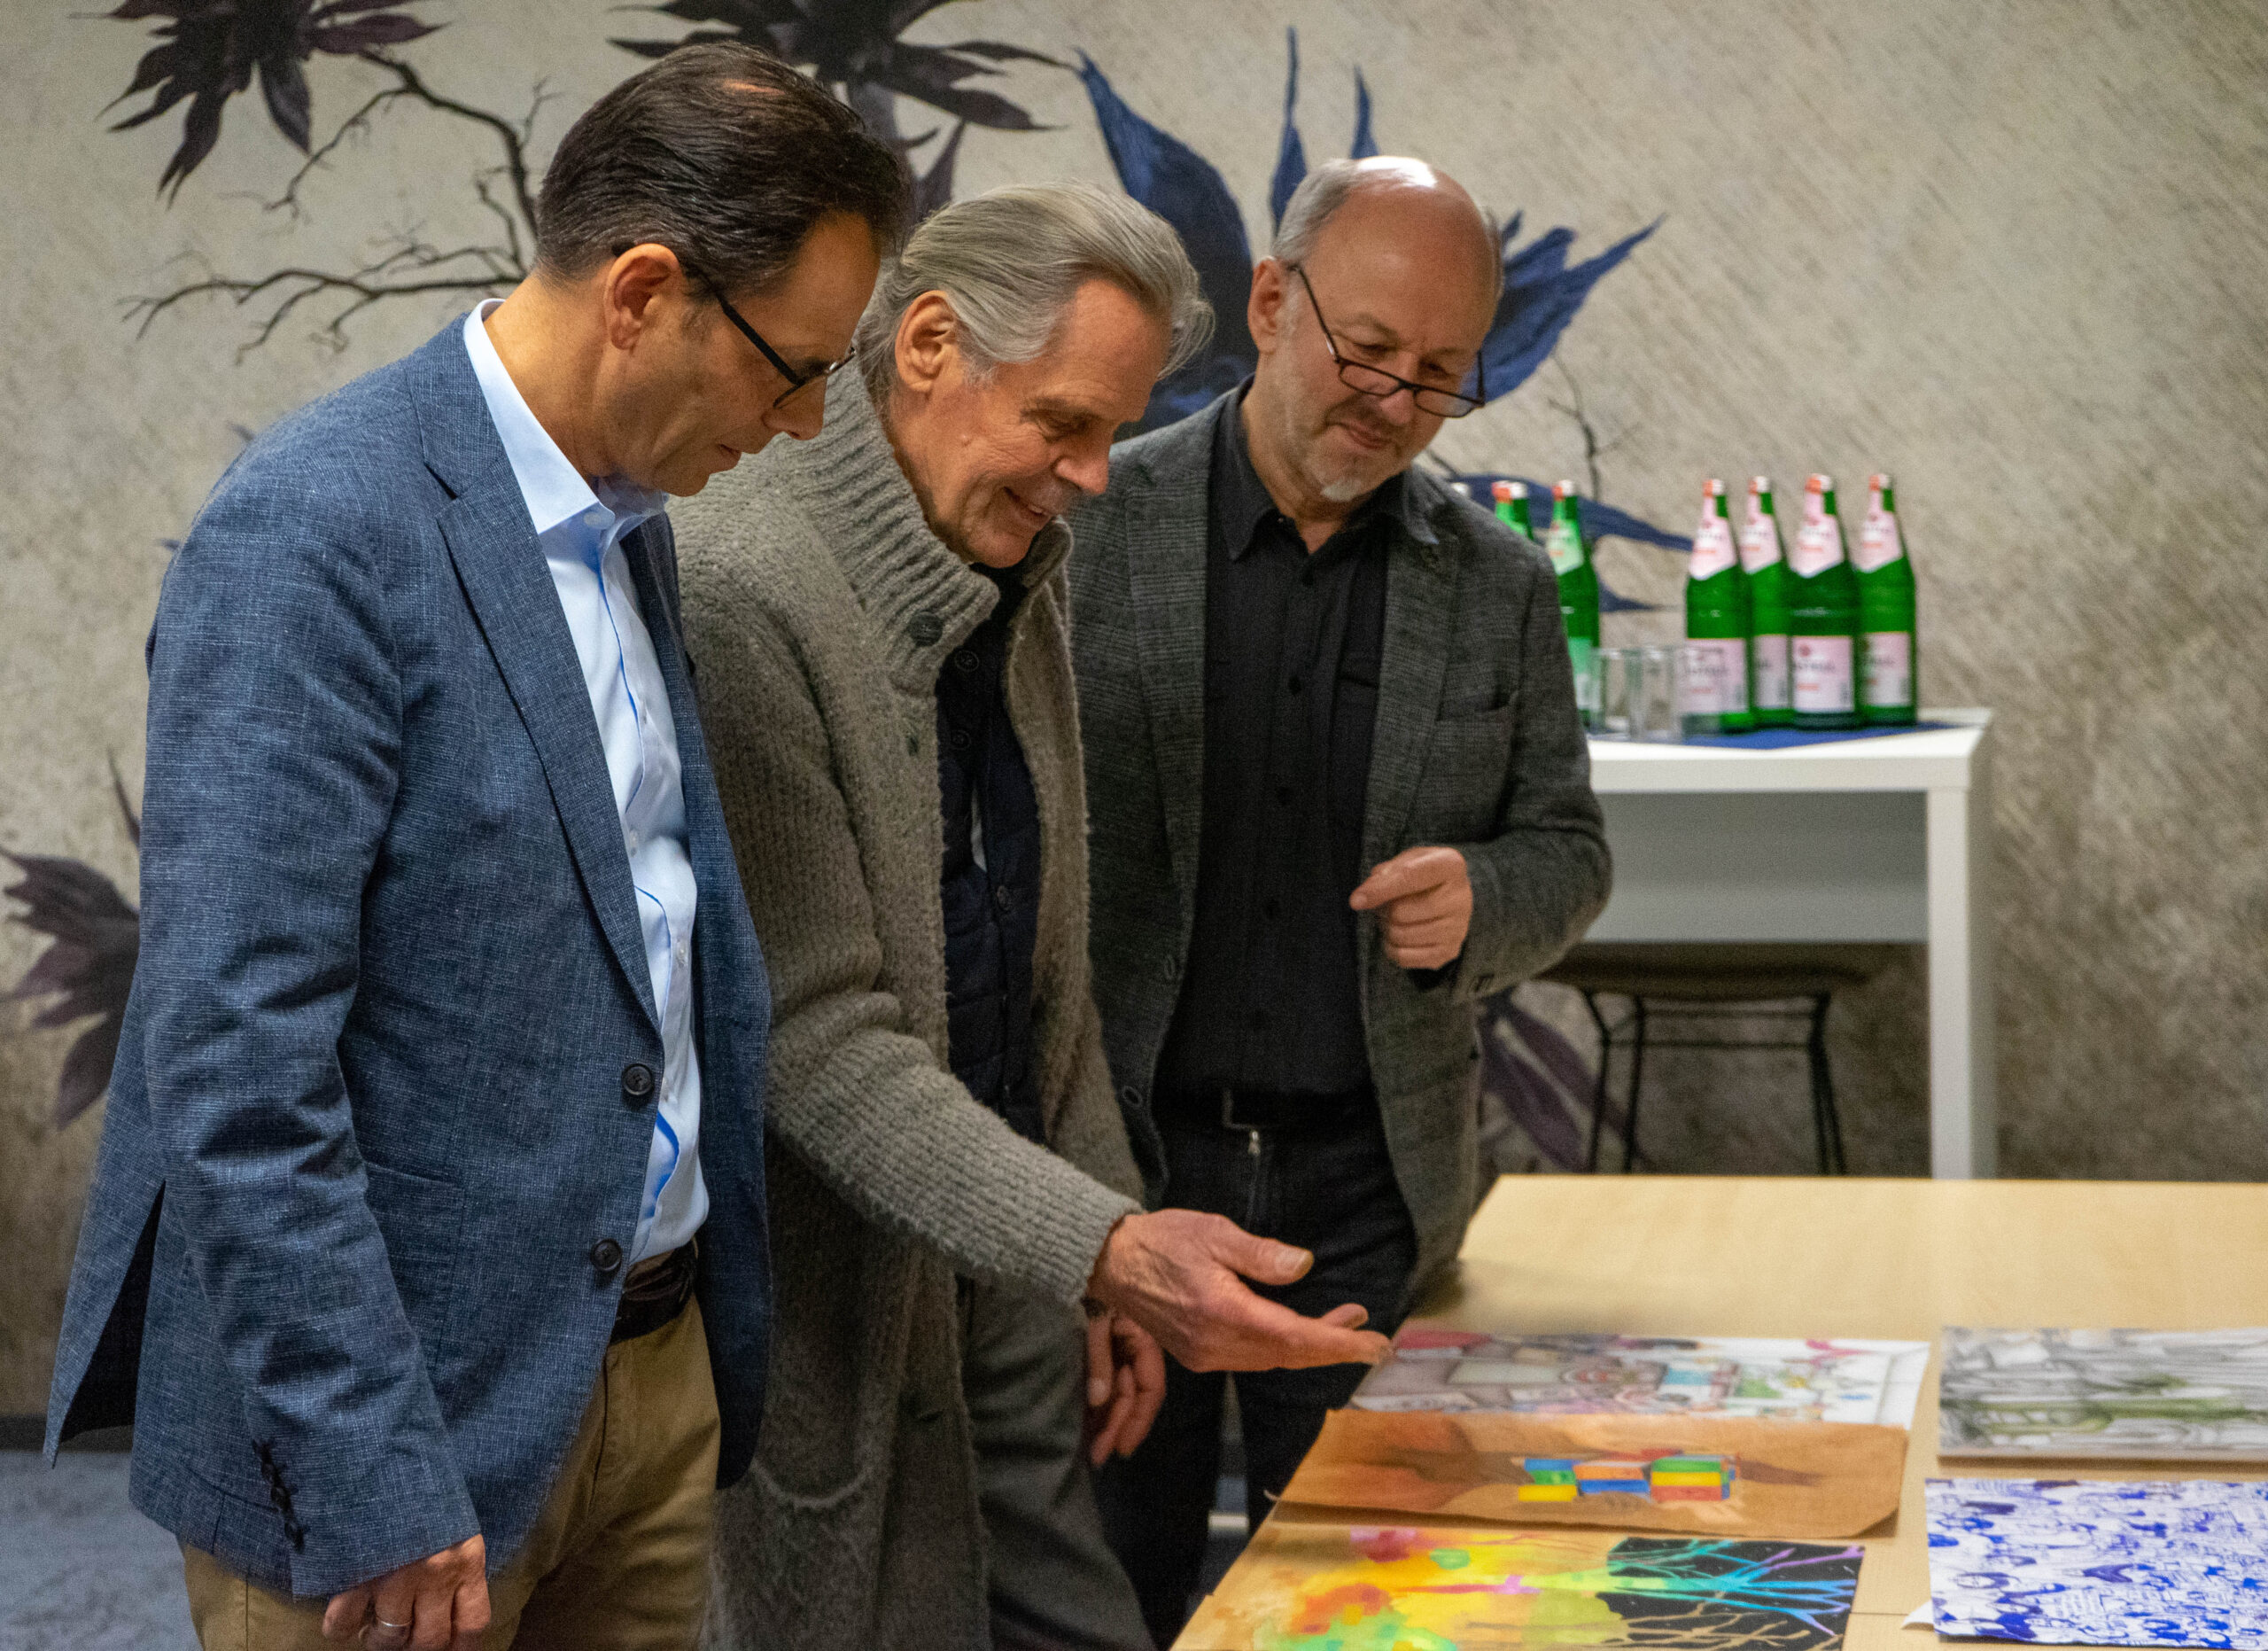 Michael Willemse (Vorstand der Volkbank Viersen), Emil Schult und Uwe Peeters (beide Künstler und Mitorganisatoren den Kunstfestivals viersen°openart sichten die Bilder.